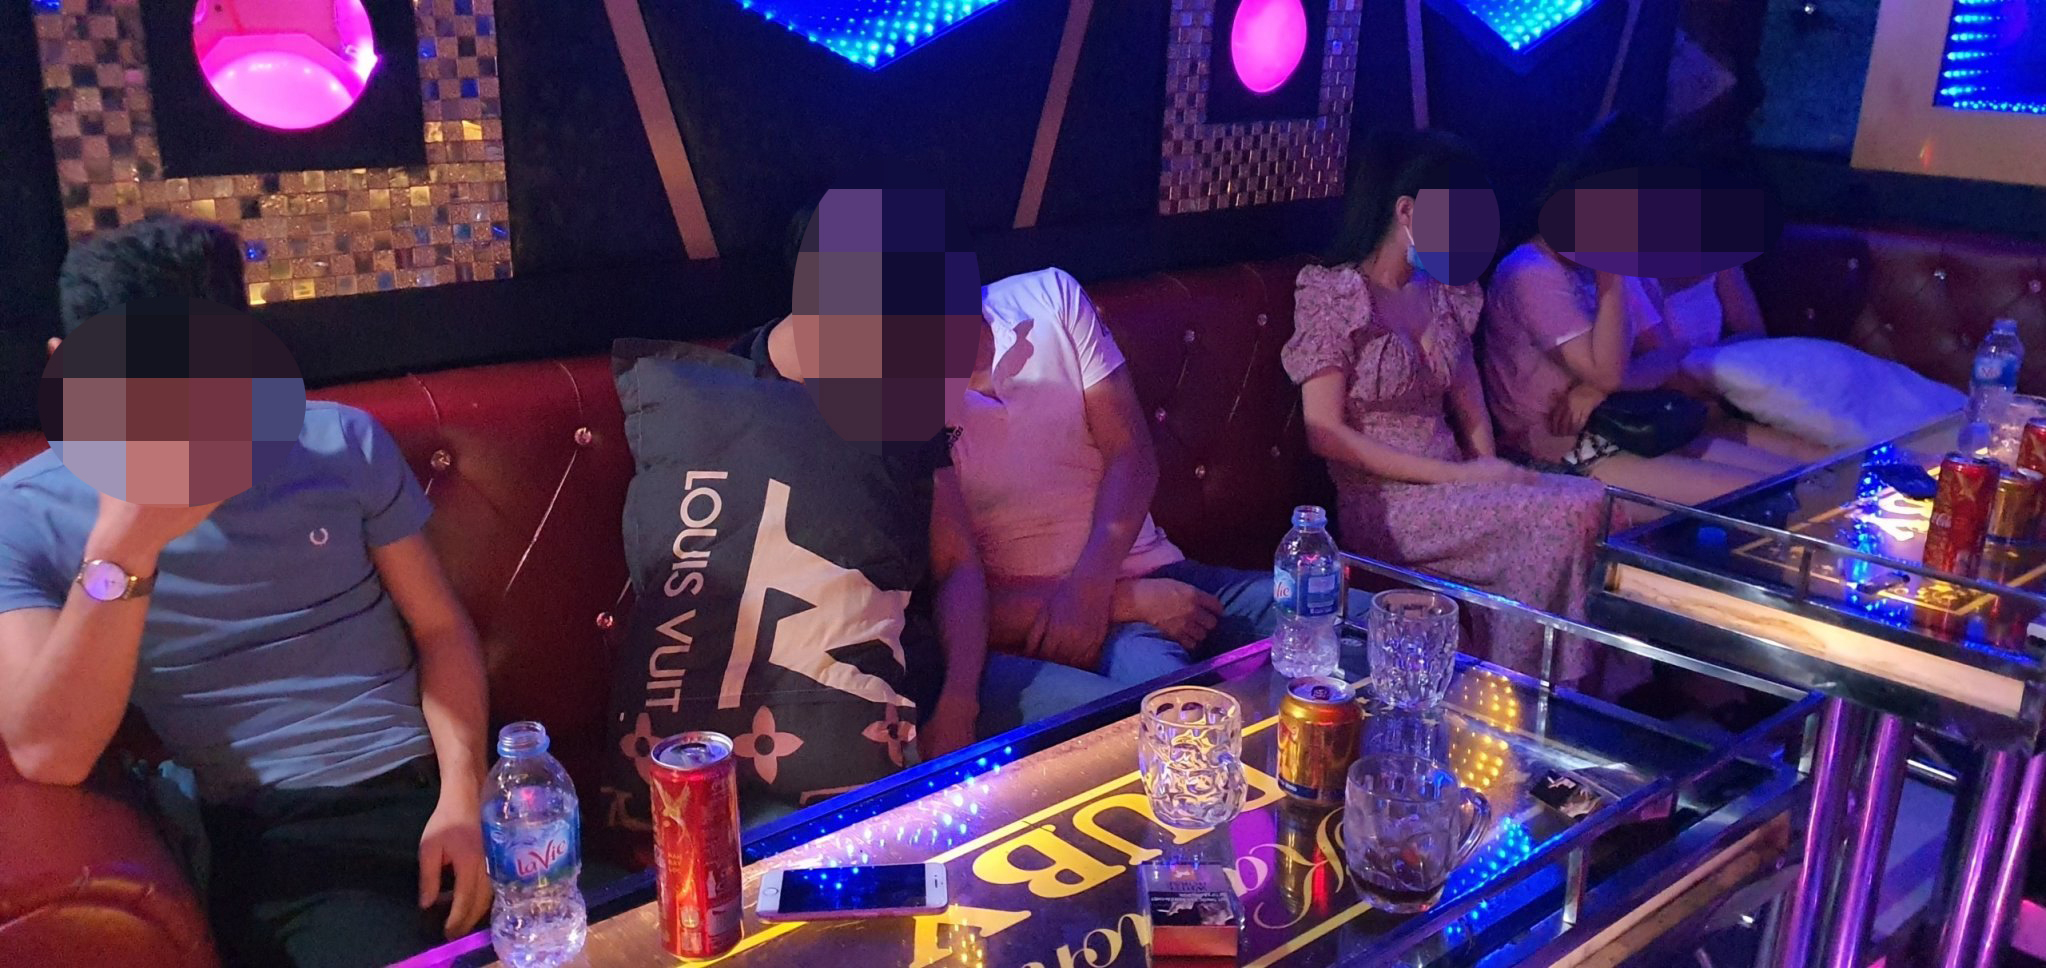 Hơn 10 thanh niên dùng ma túy trong quán karaoke.